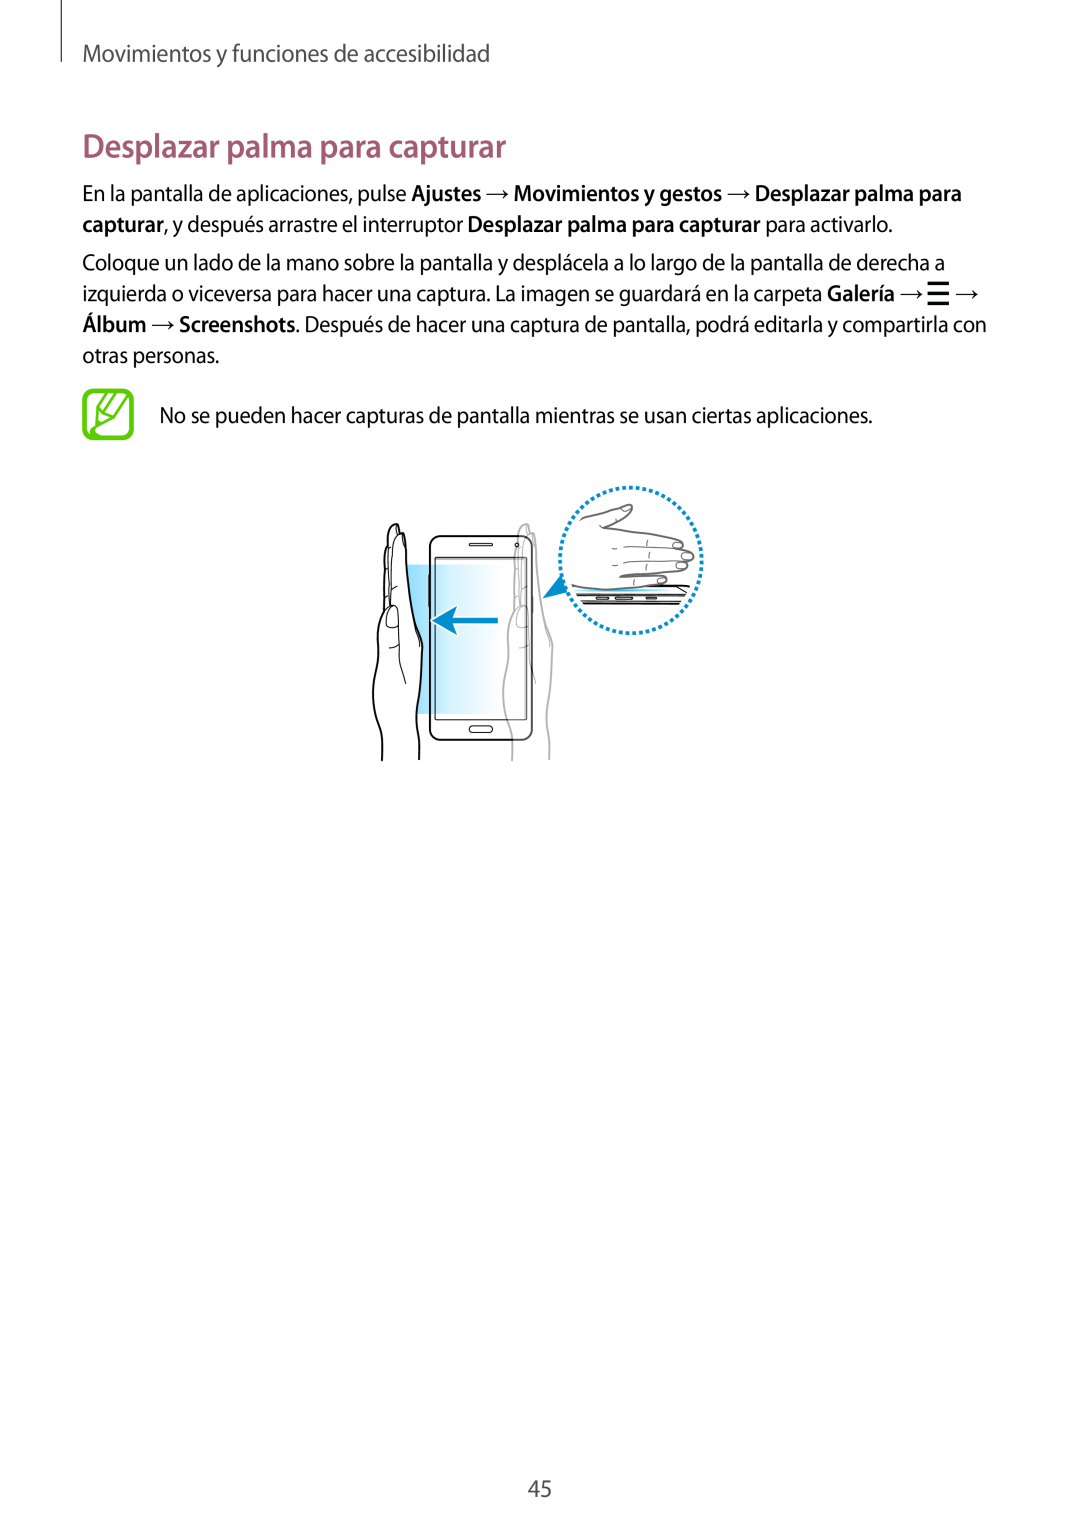 Samsung SM-A500FZDUPHE, SM-A500FZSUPHE manual Desplazar palma para capturar, Movimientos y funciones de accesibilidad 